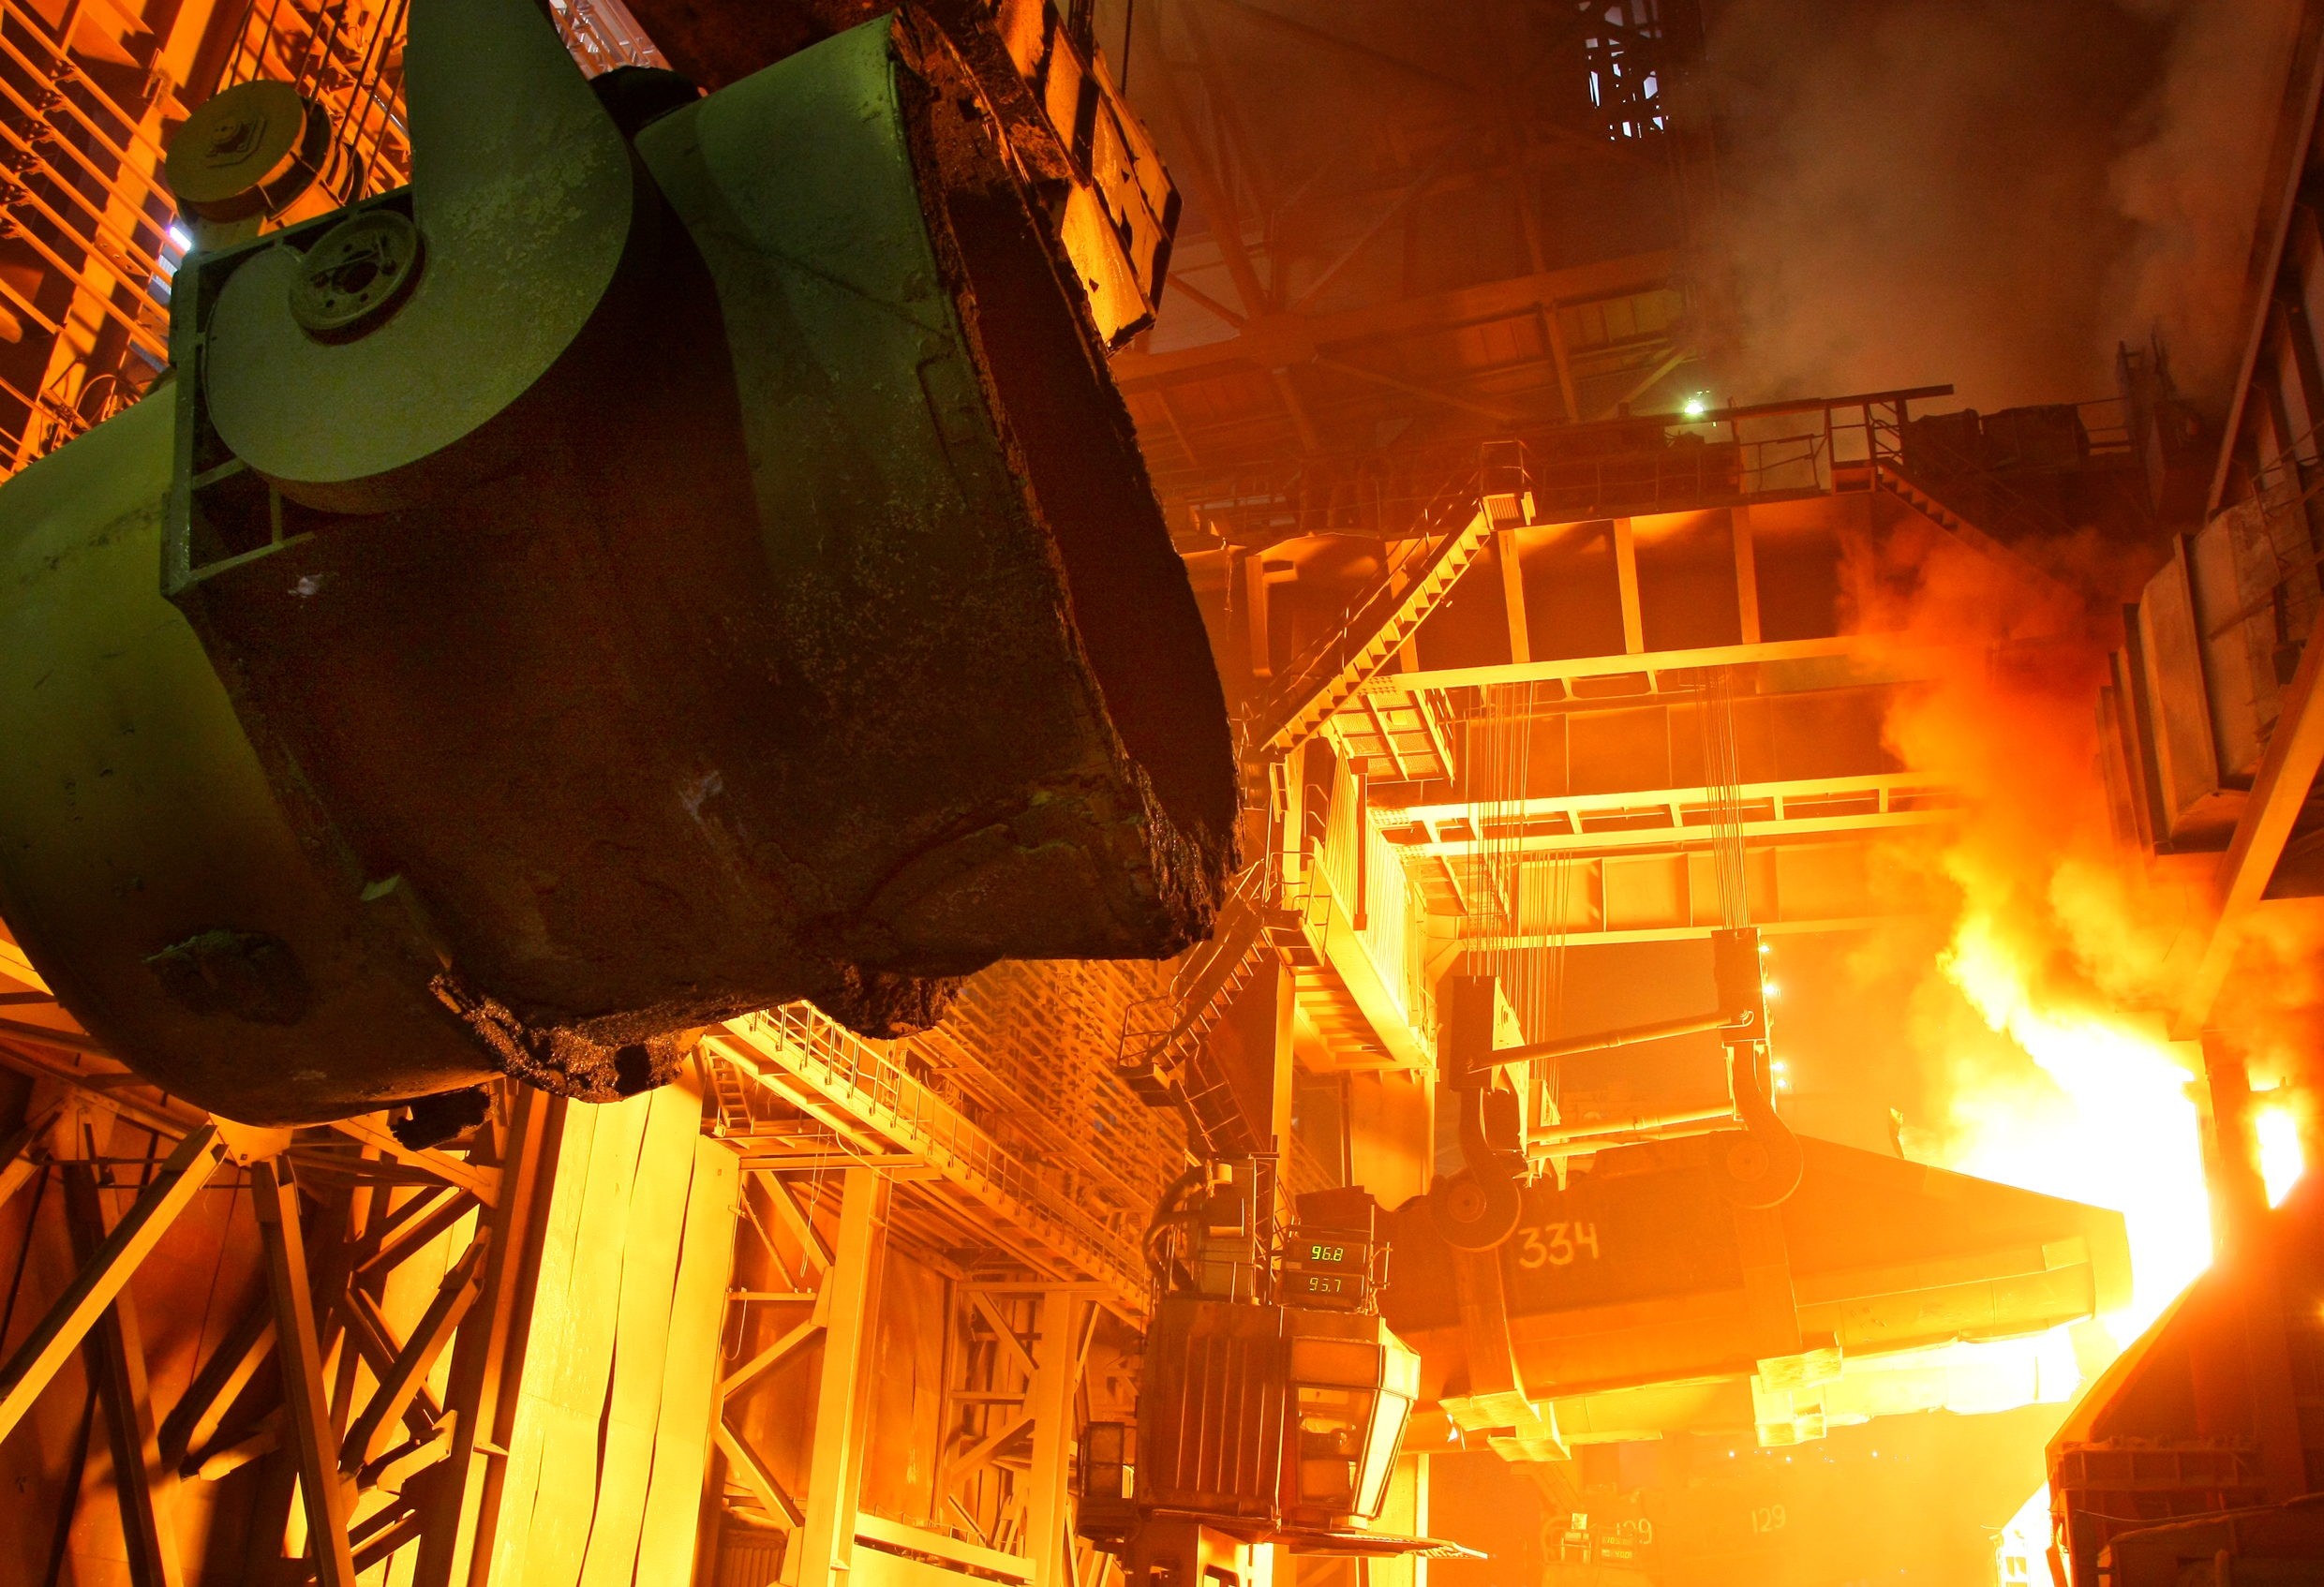 ММК реализует крупный экологический проект в сталеплавильном производстве